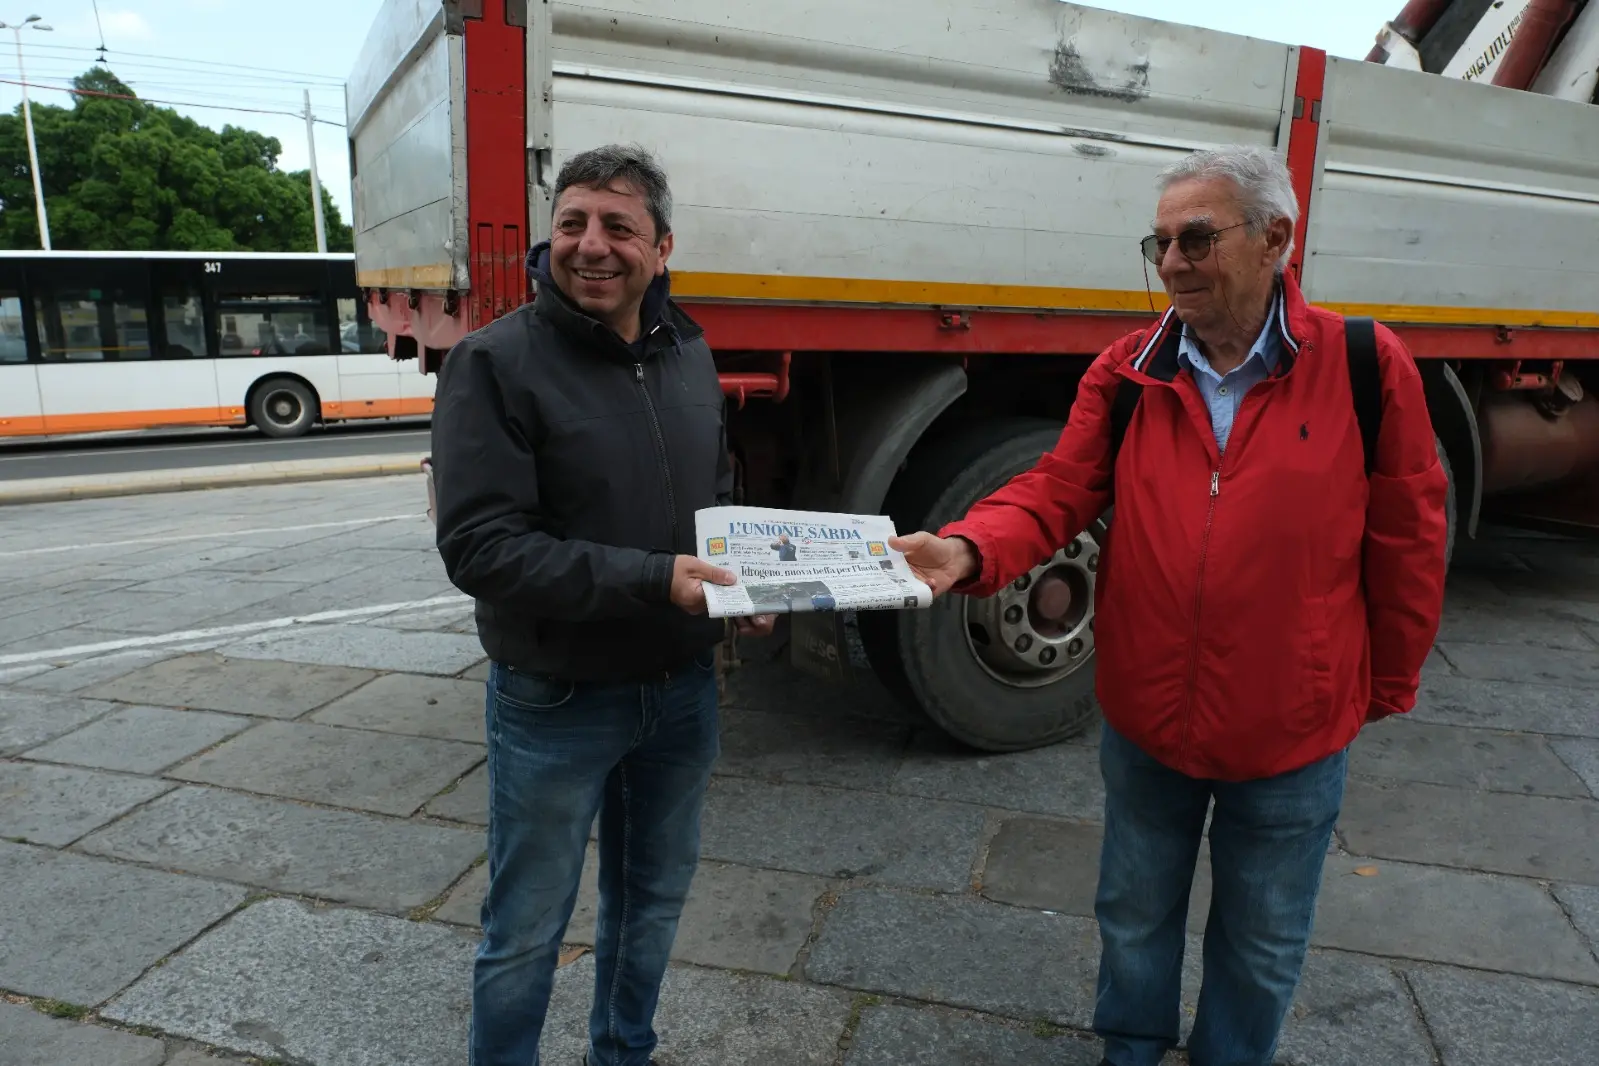 Antonio Durzu consegna una copia dell'Unione Sarda a un cliente (Giuseppe Ungari)